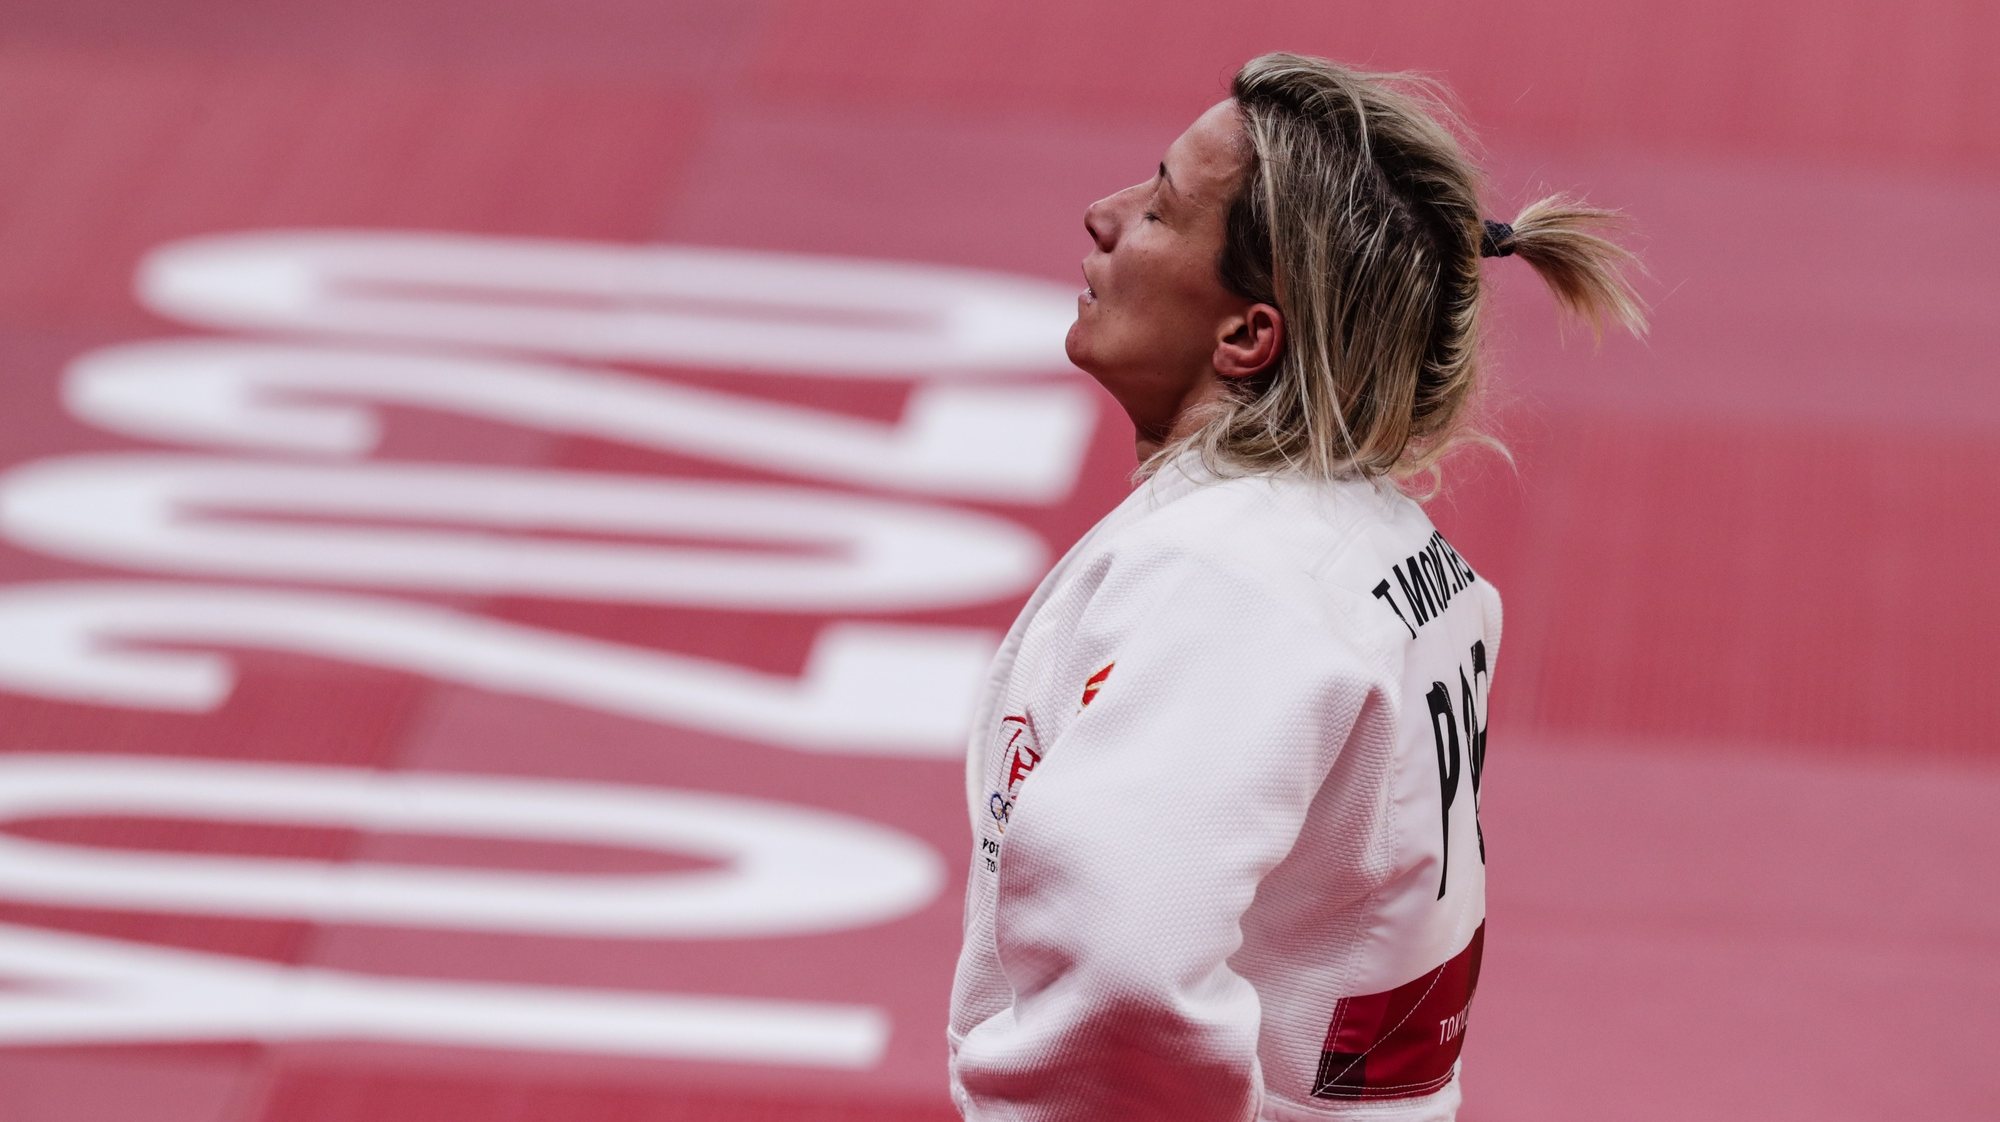 A judoca portuguesa Telma Monteiro foi derrotada pela judoca polaca Julia Kowalczyk, depois de mais de 5 minutos no golden score e falhou os quartos de final dos Jogos Olimpicos de Tóquio 2020, no Budokan em Tóquio, 26 de julho de 2021. TIAGO PETINGA/LUSA